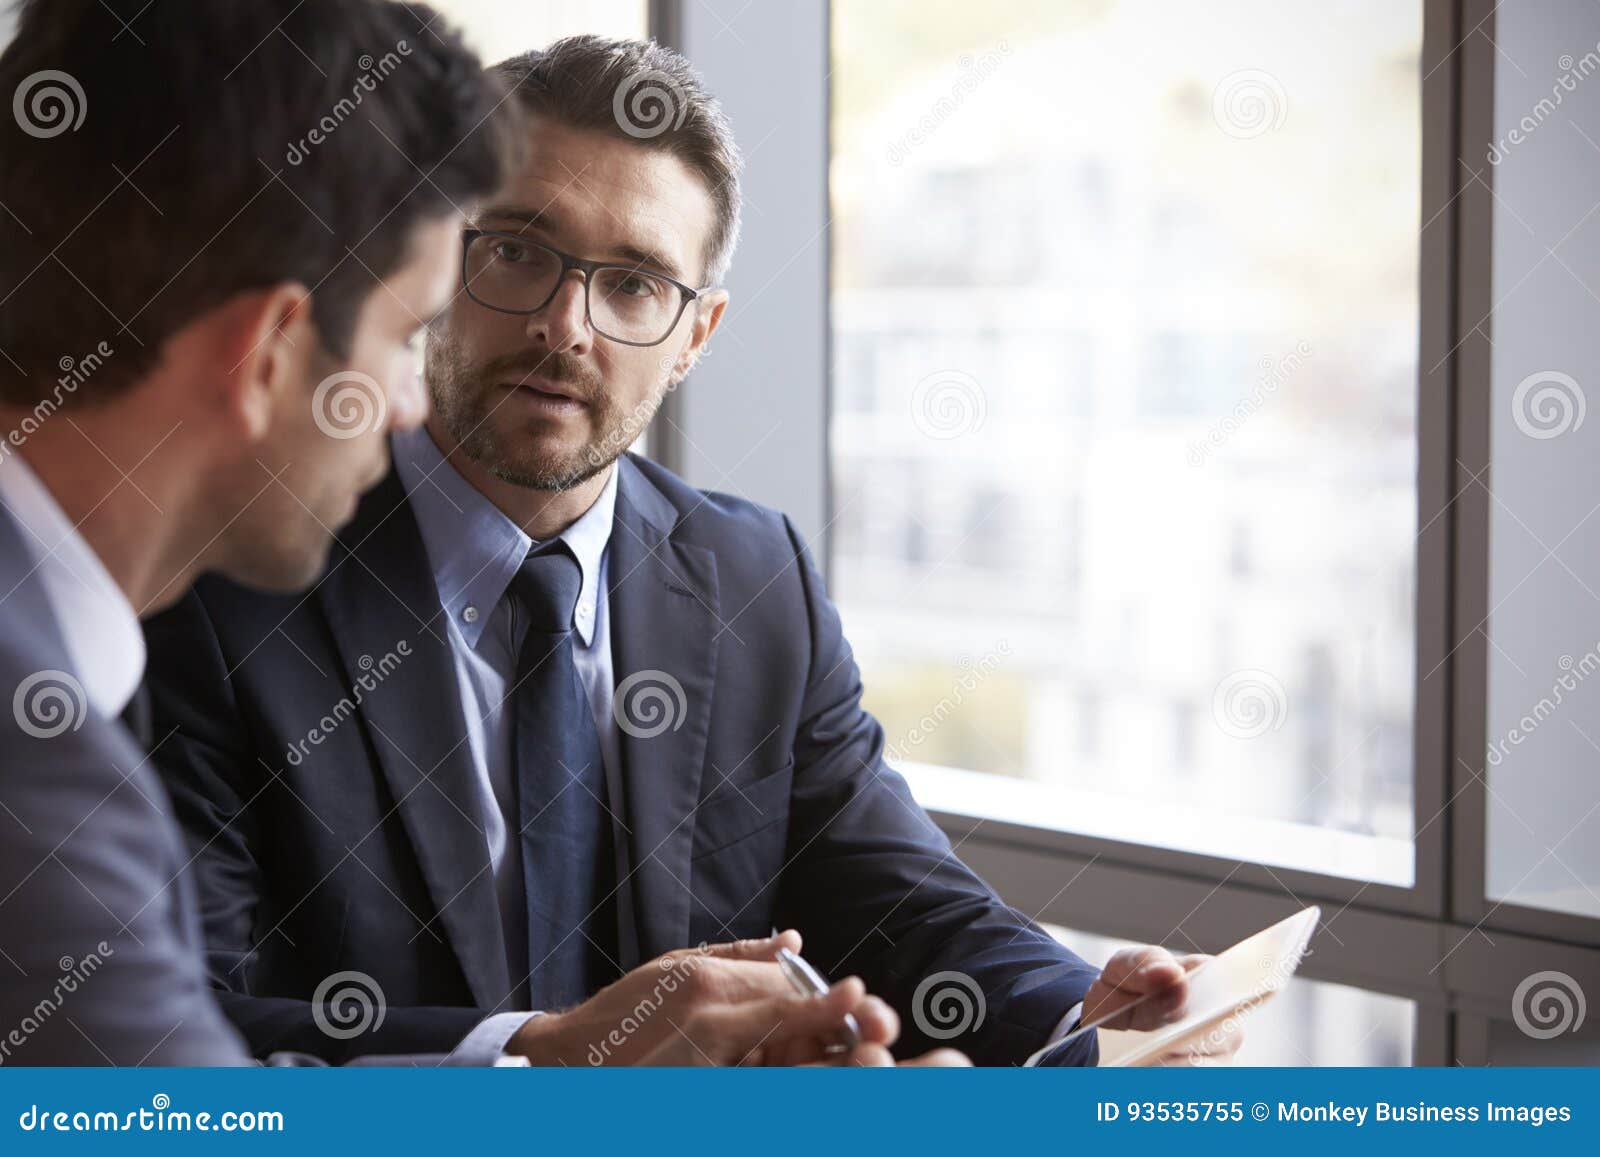 two businessmen using digital tablet in office meeting